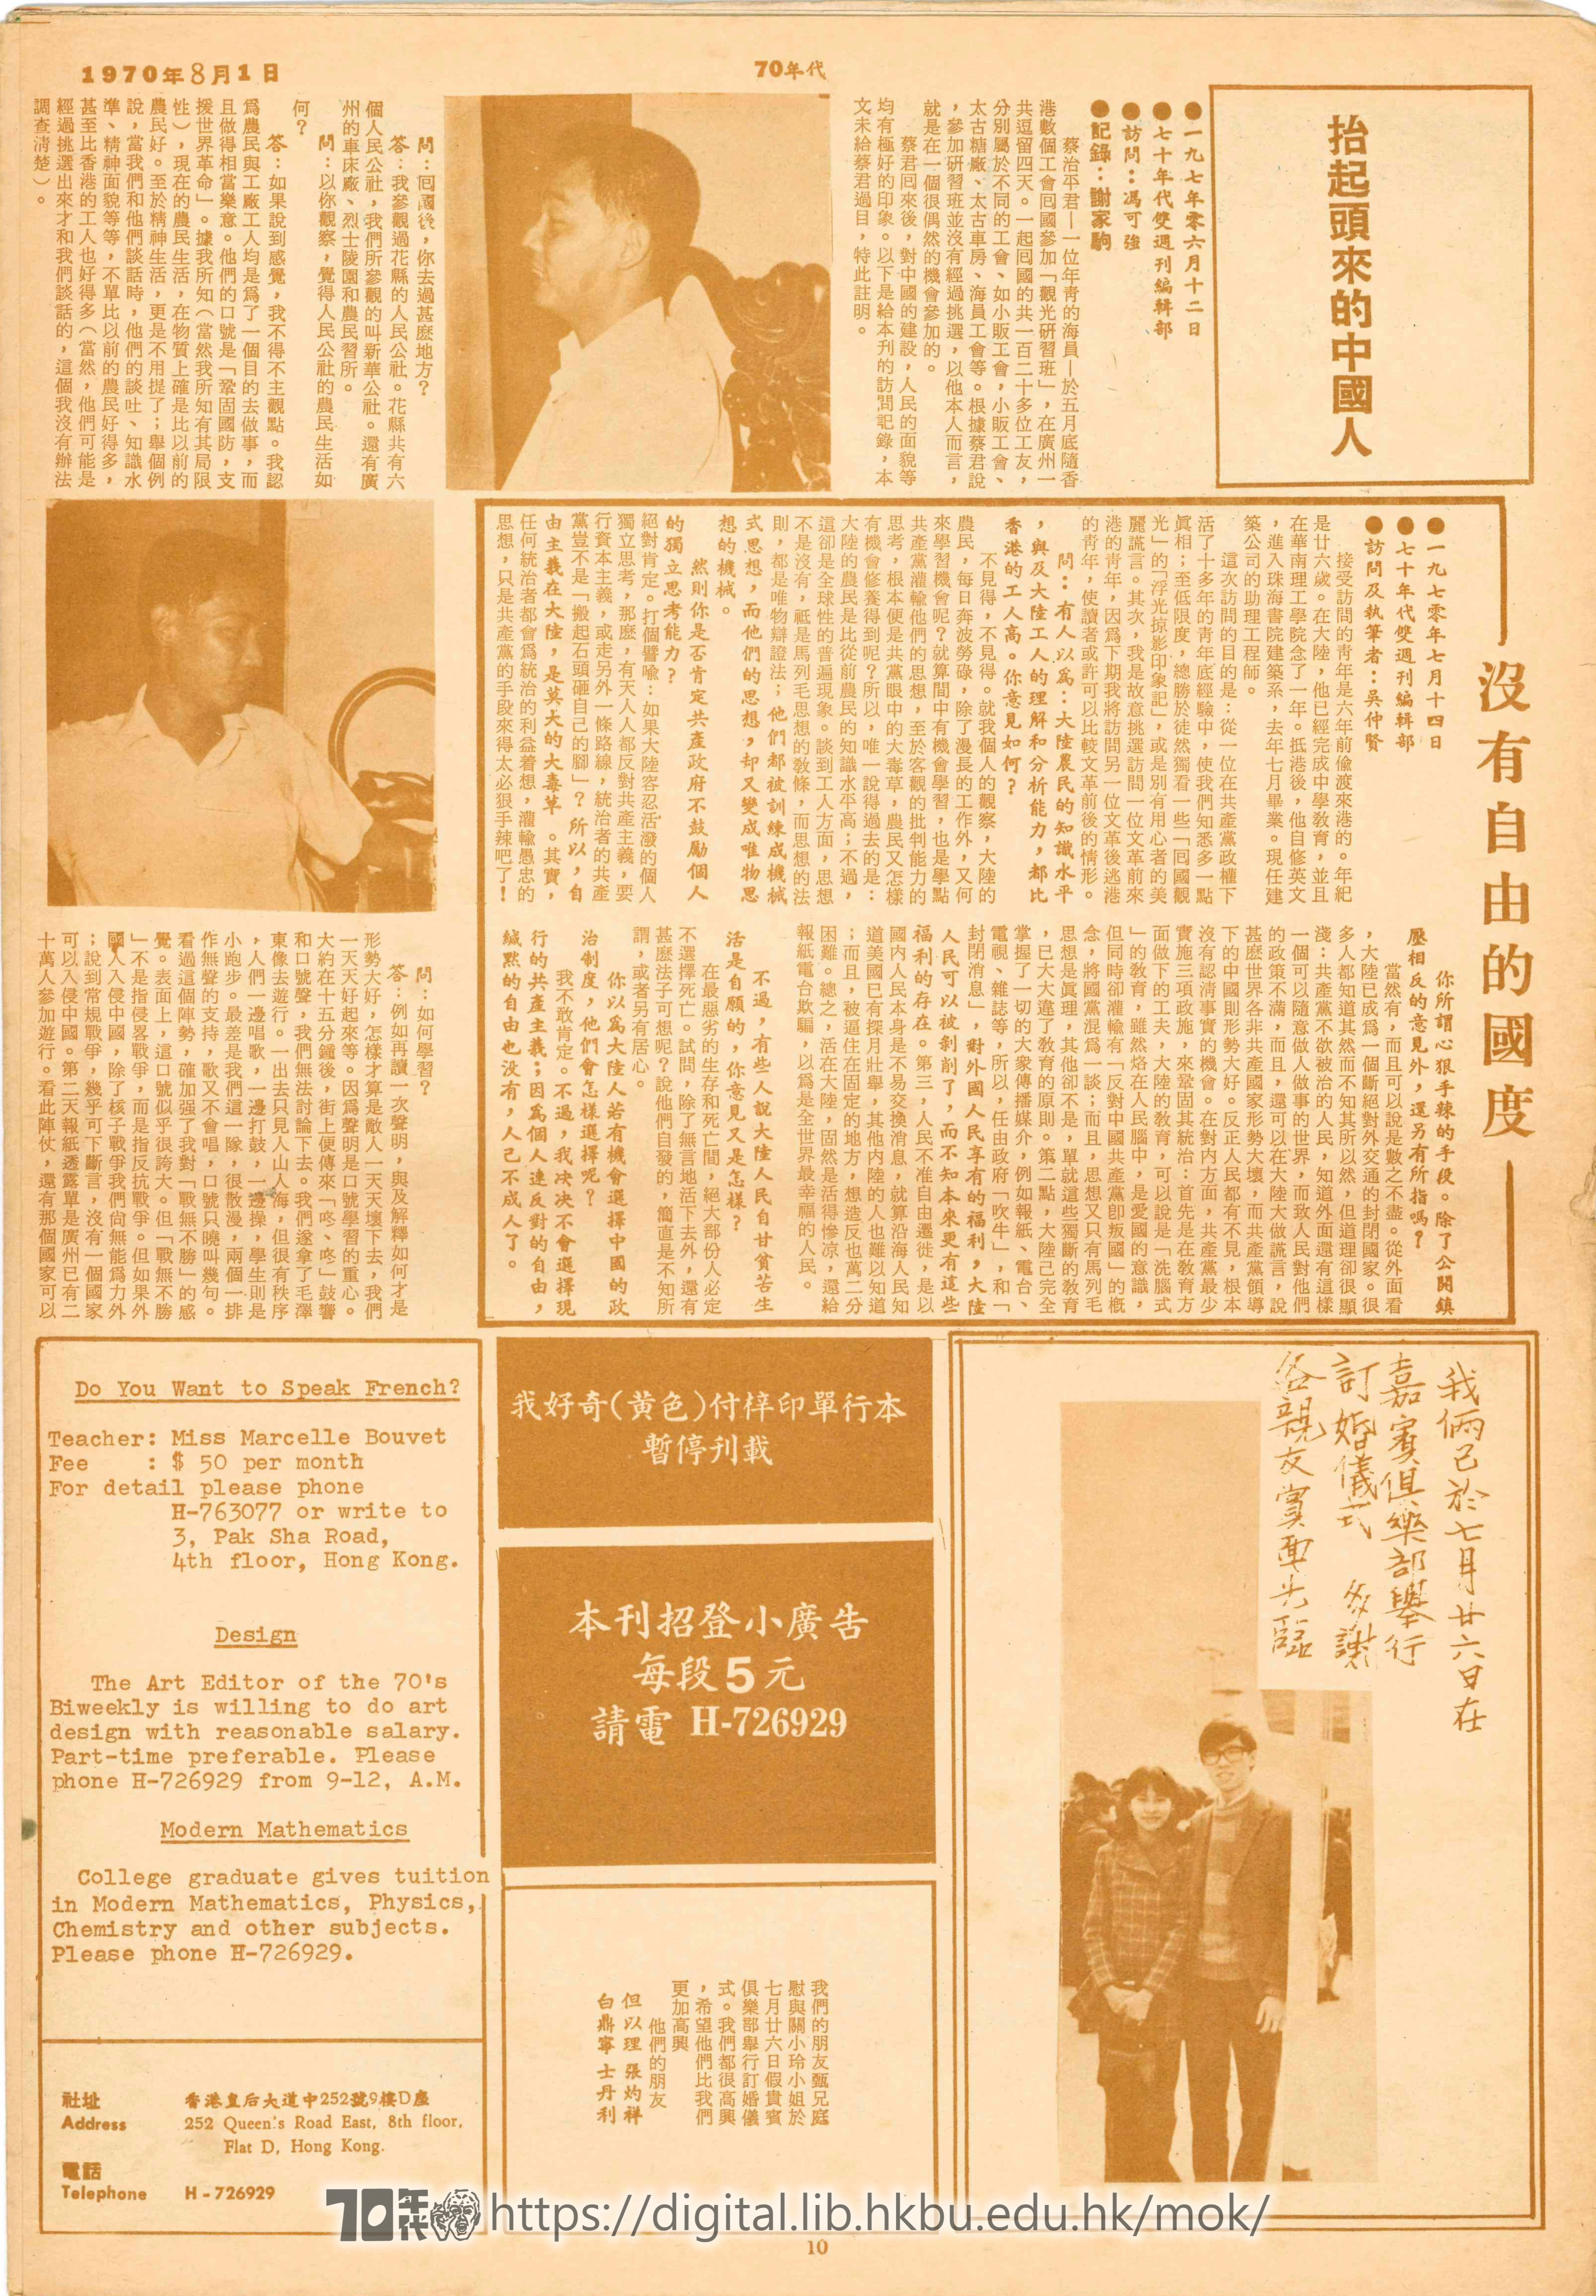   抬起頭來的中國人 七十年代雙週刊編輯部, 訪問：馮可強 